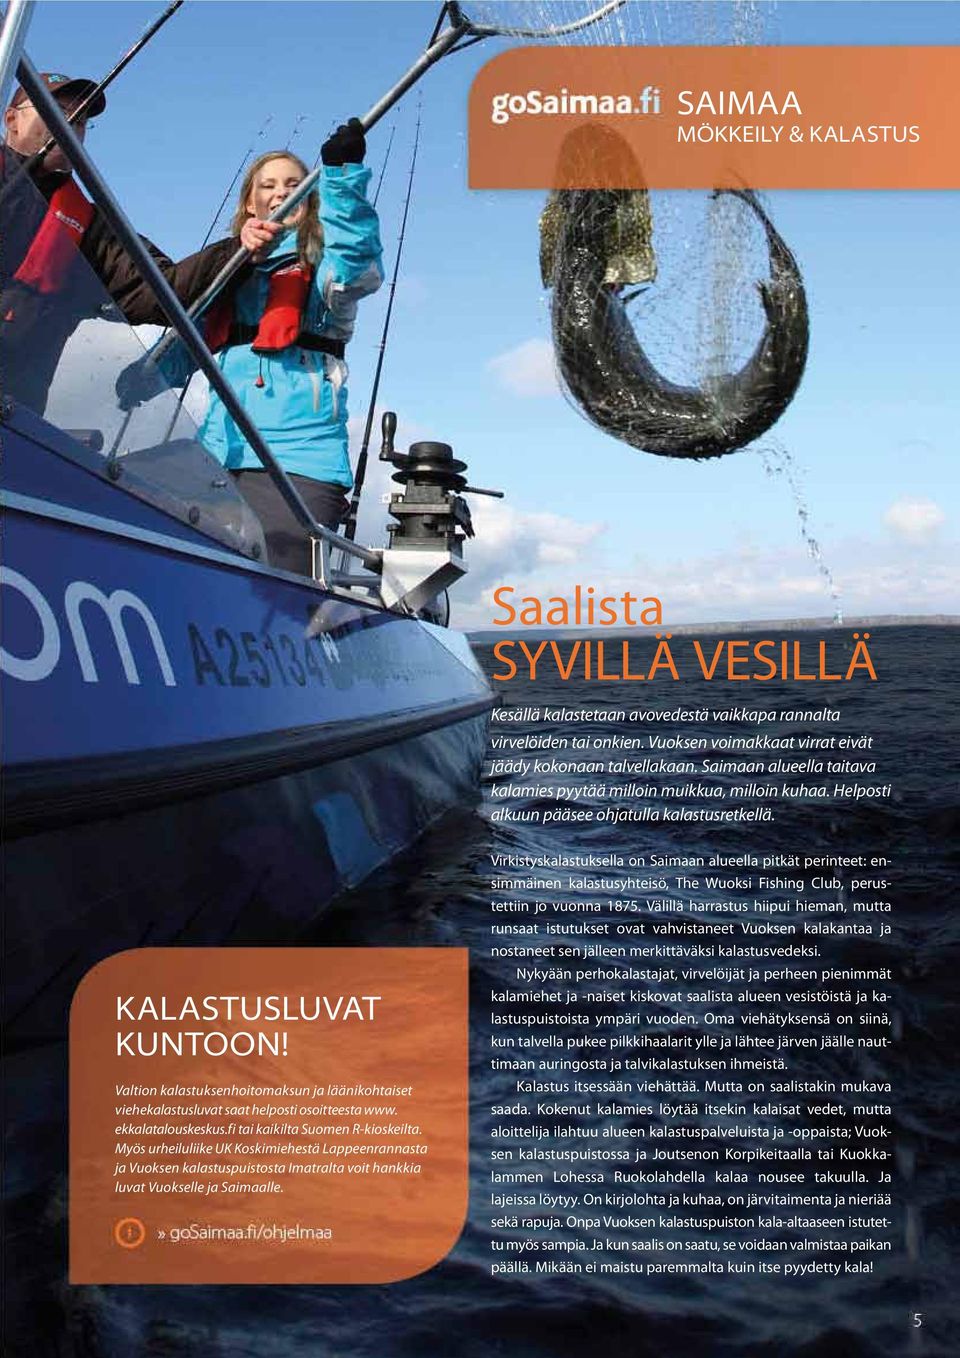 Valtion kalastuksenhoitomaksun ja läänikohtaiset viehe kalastusluvat saat helposti osoitteesta www. ekkalatalouskeskus.fi tai kaikilta Suomen R-kioskeilta.